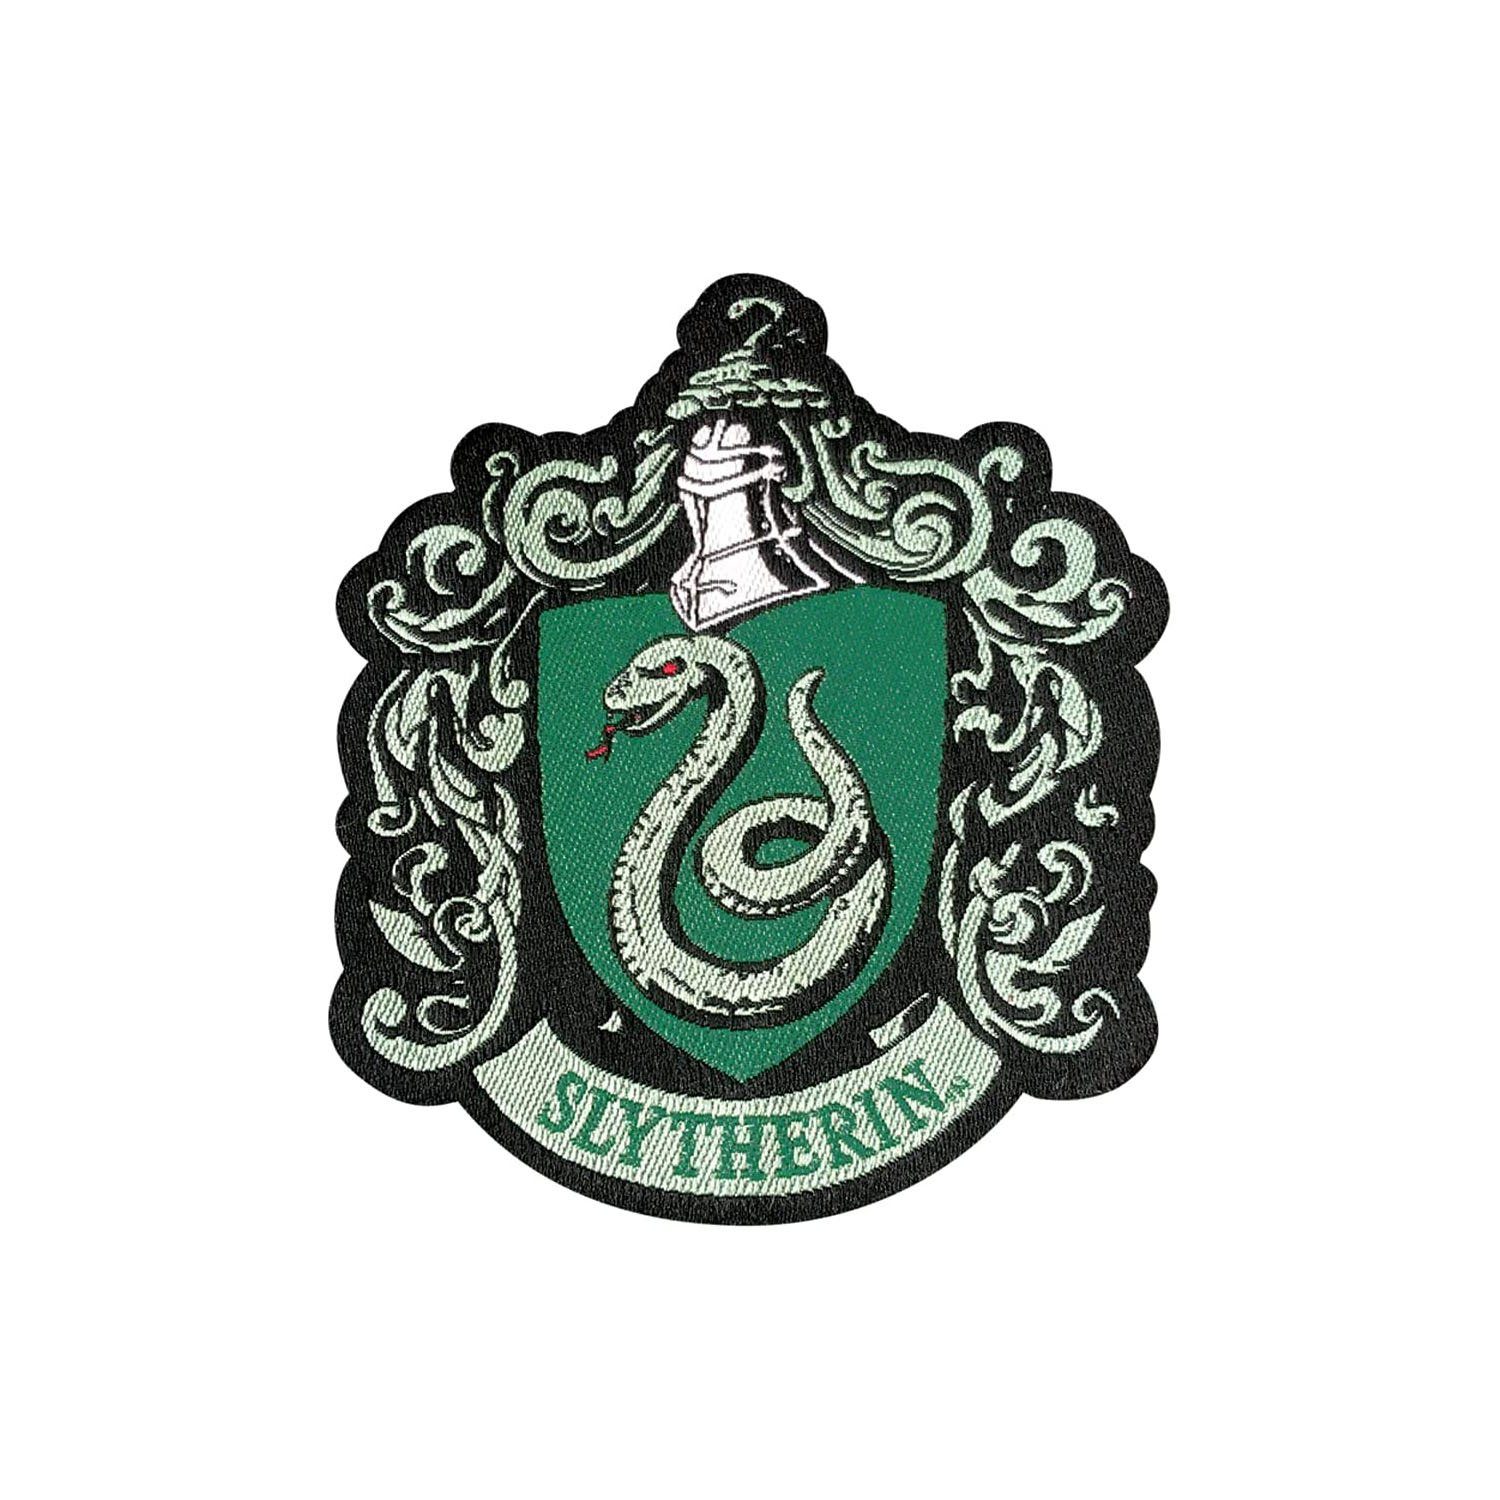 Harry Potter Strickmütze Harry Potter zum grün Slytherin - Mütze Stricken